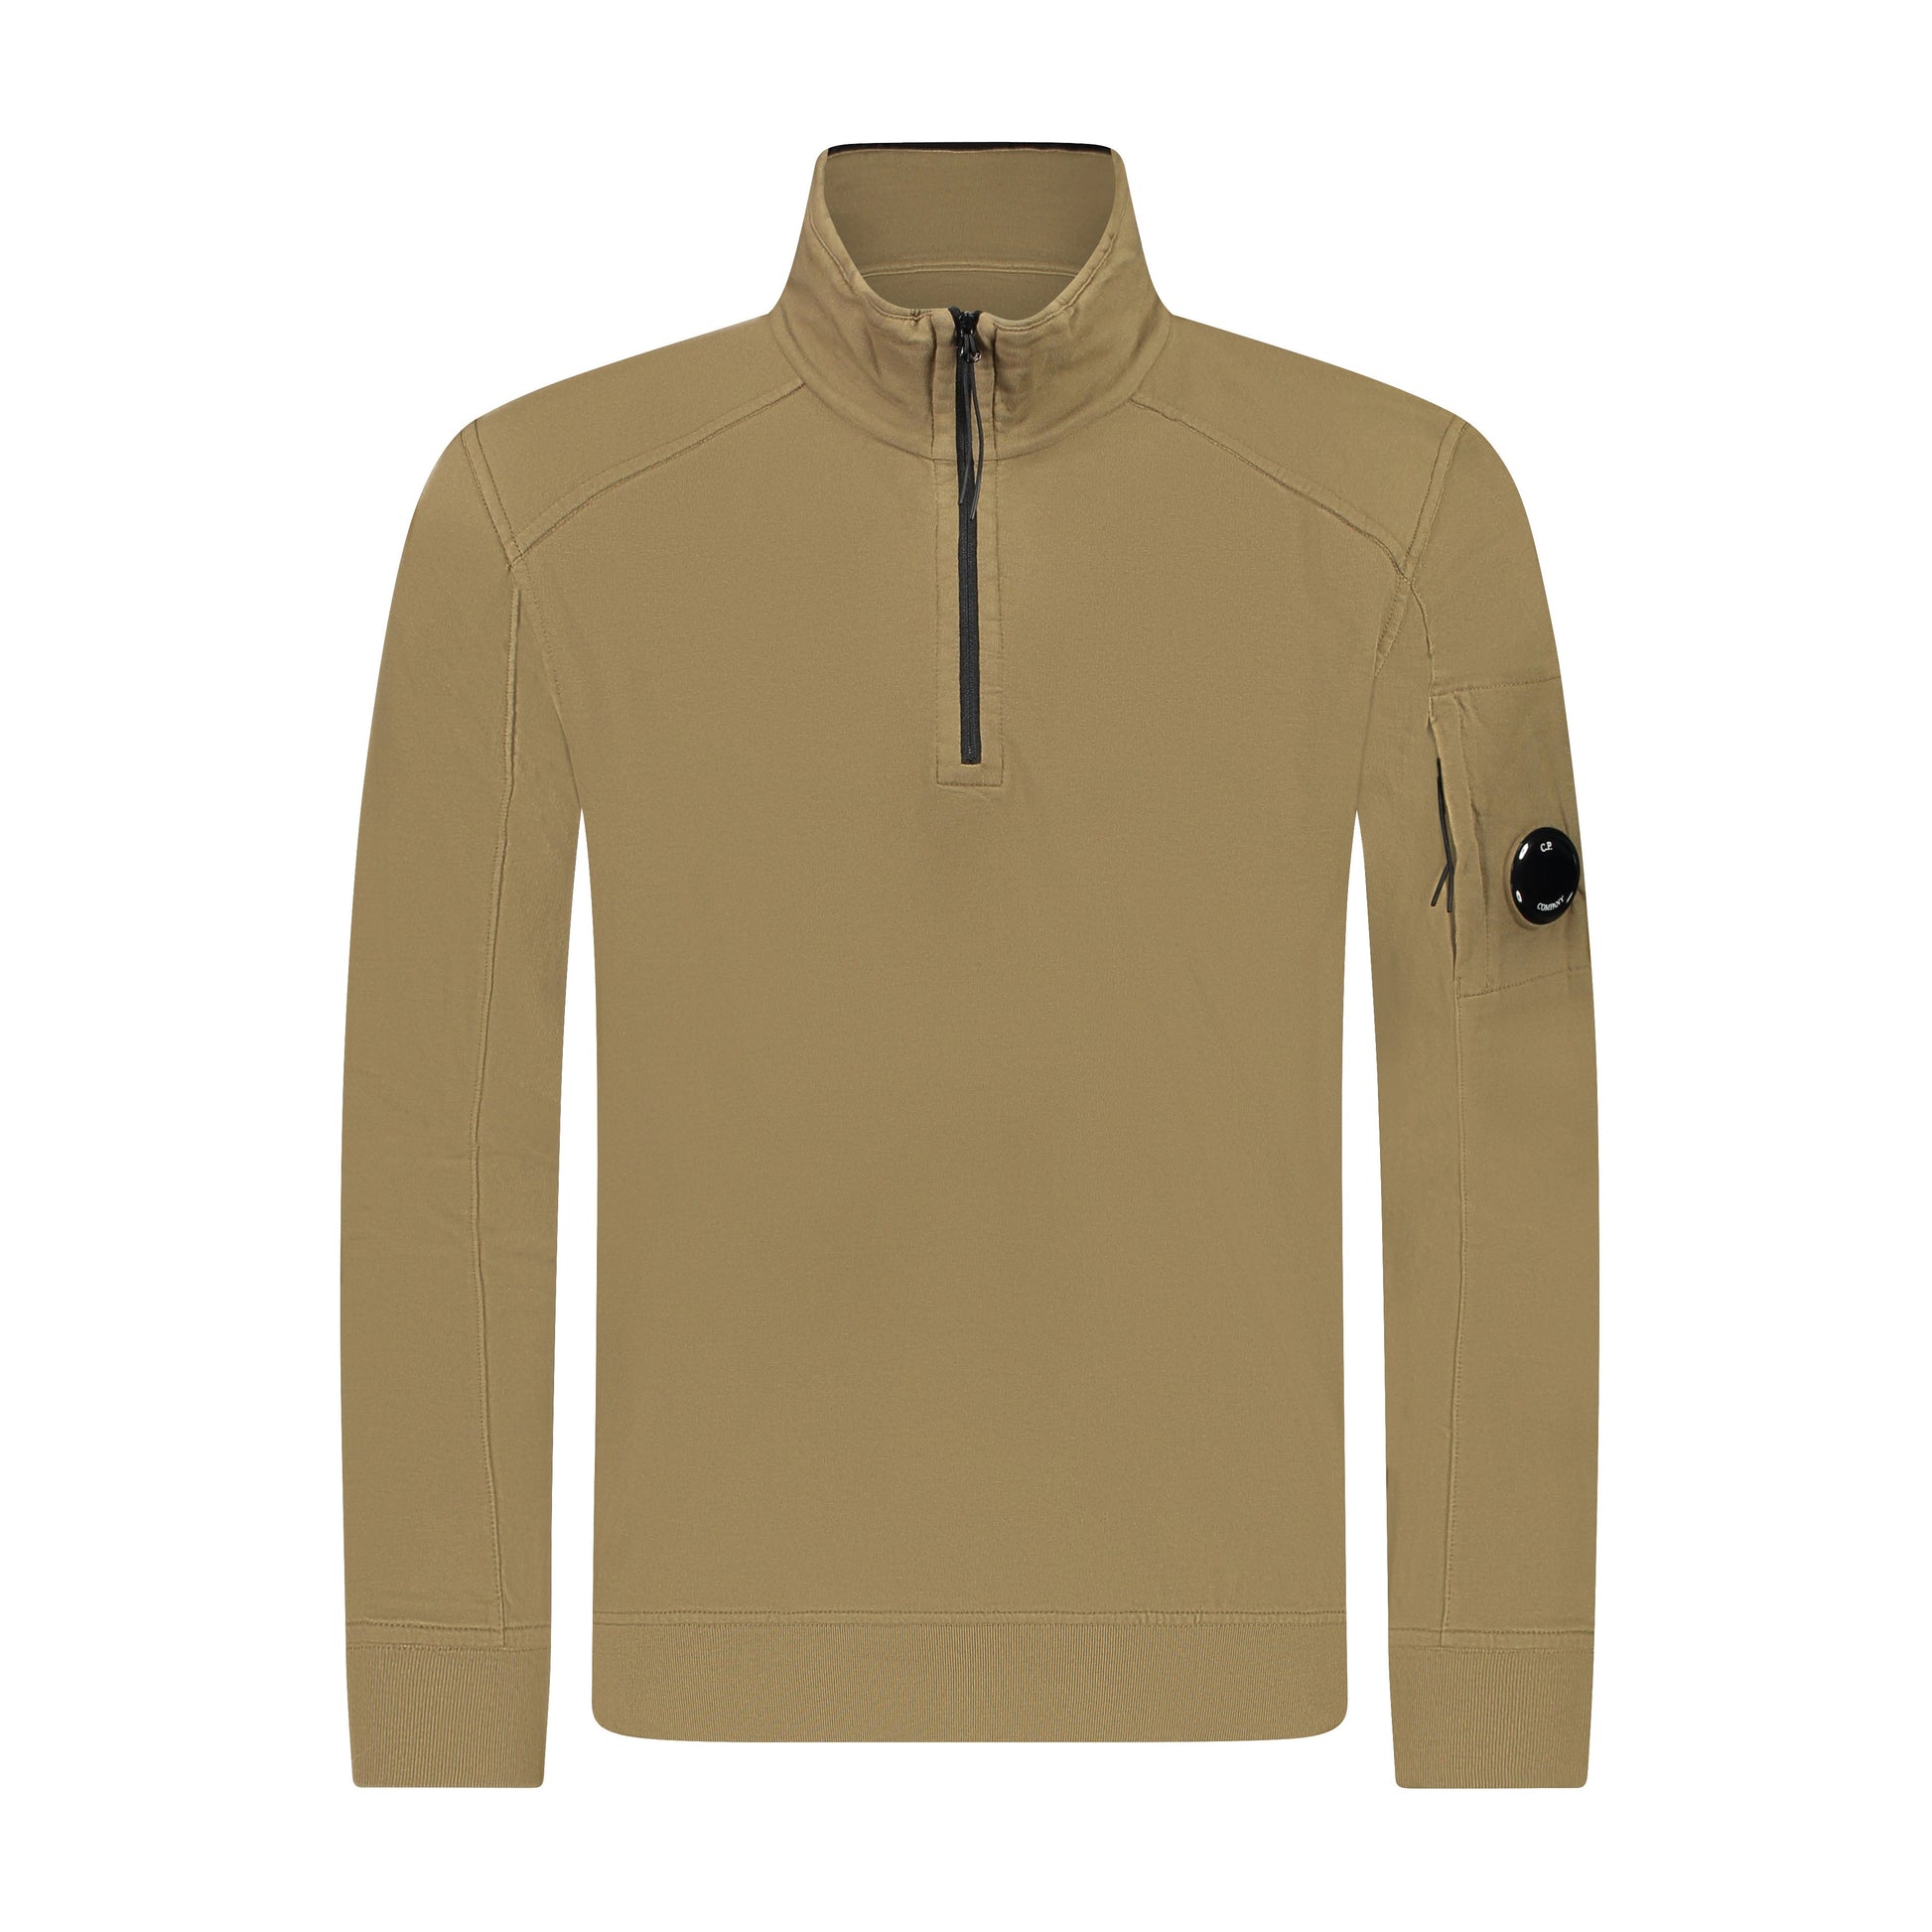 C.P. Company Light Fleece 1/2 Zip Sweatshirt - 653 Butternut Brown - Escape Menswear